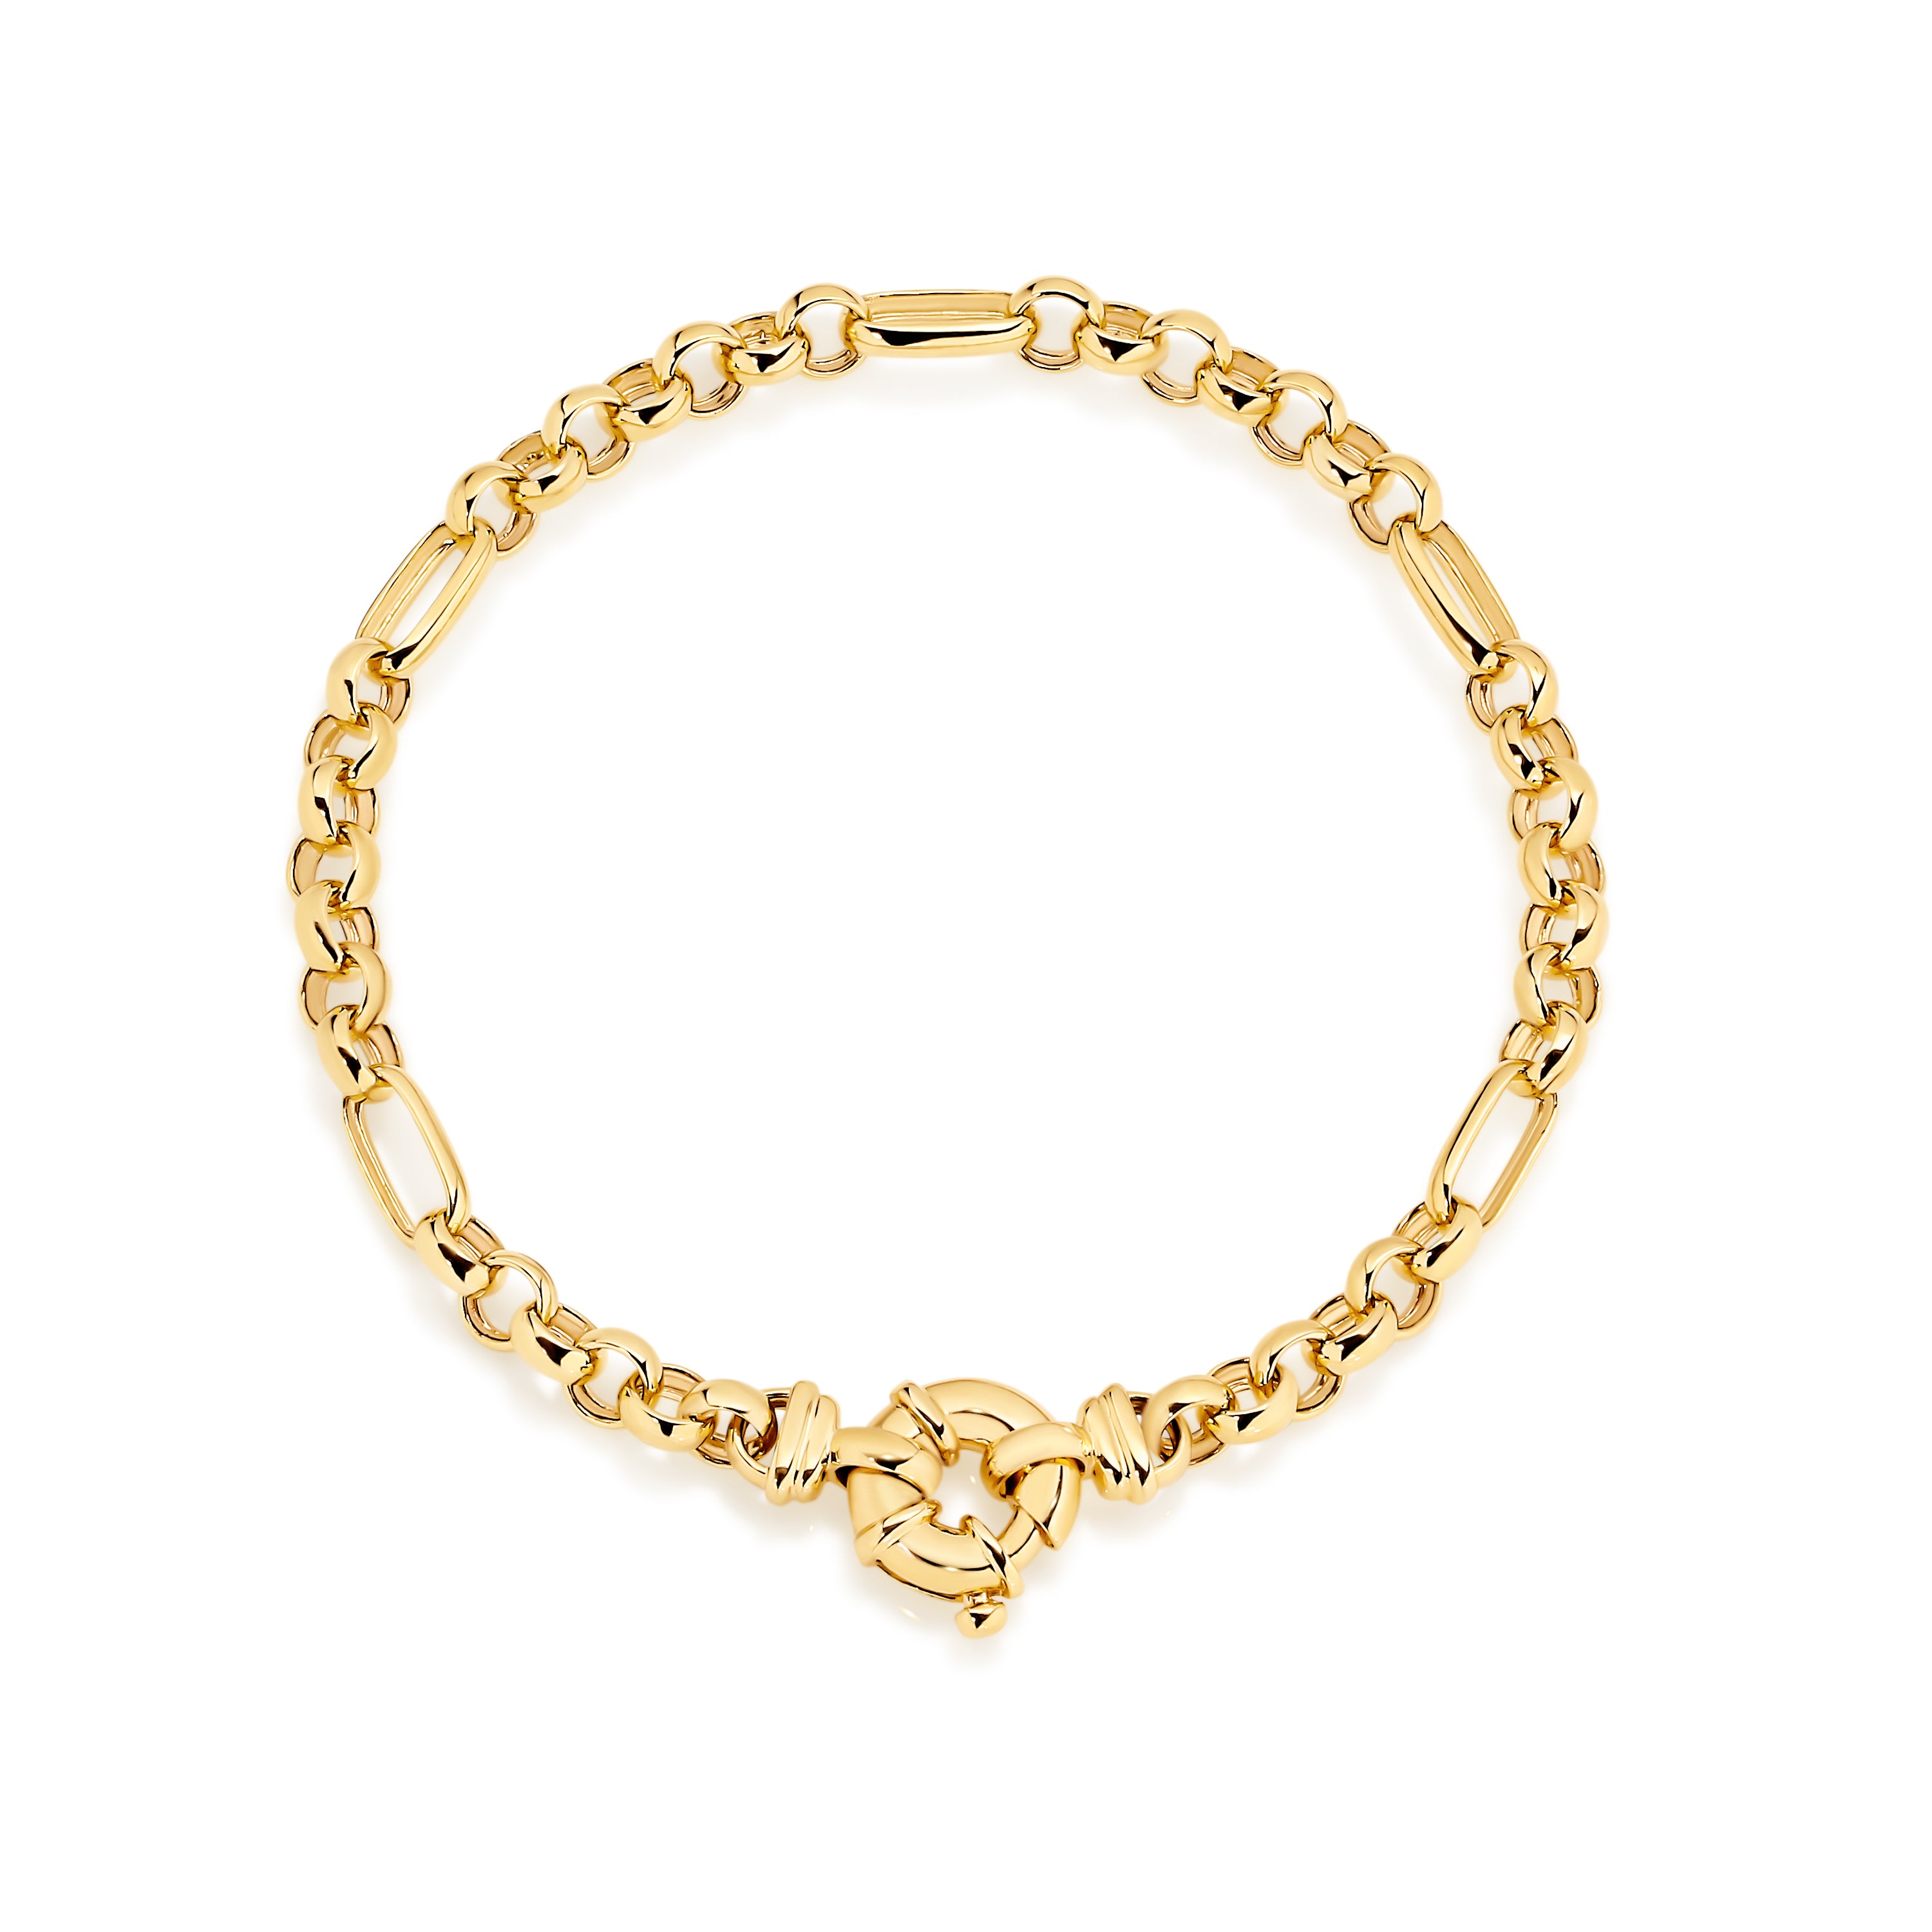 9ct solid gold bracelet